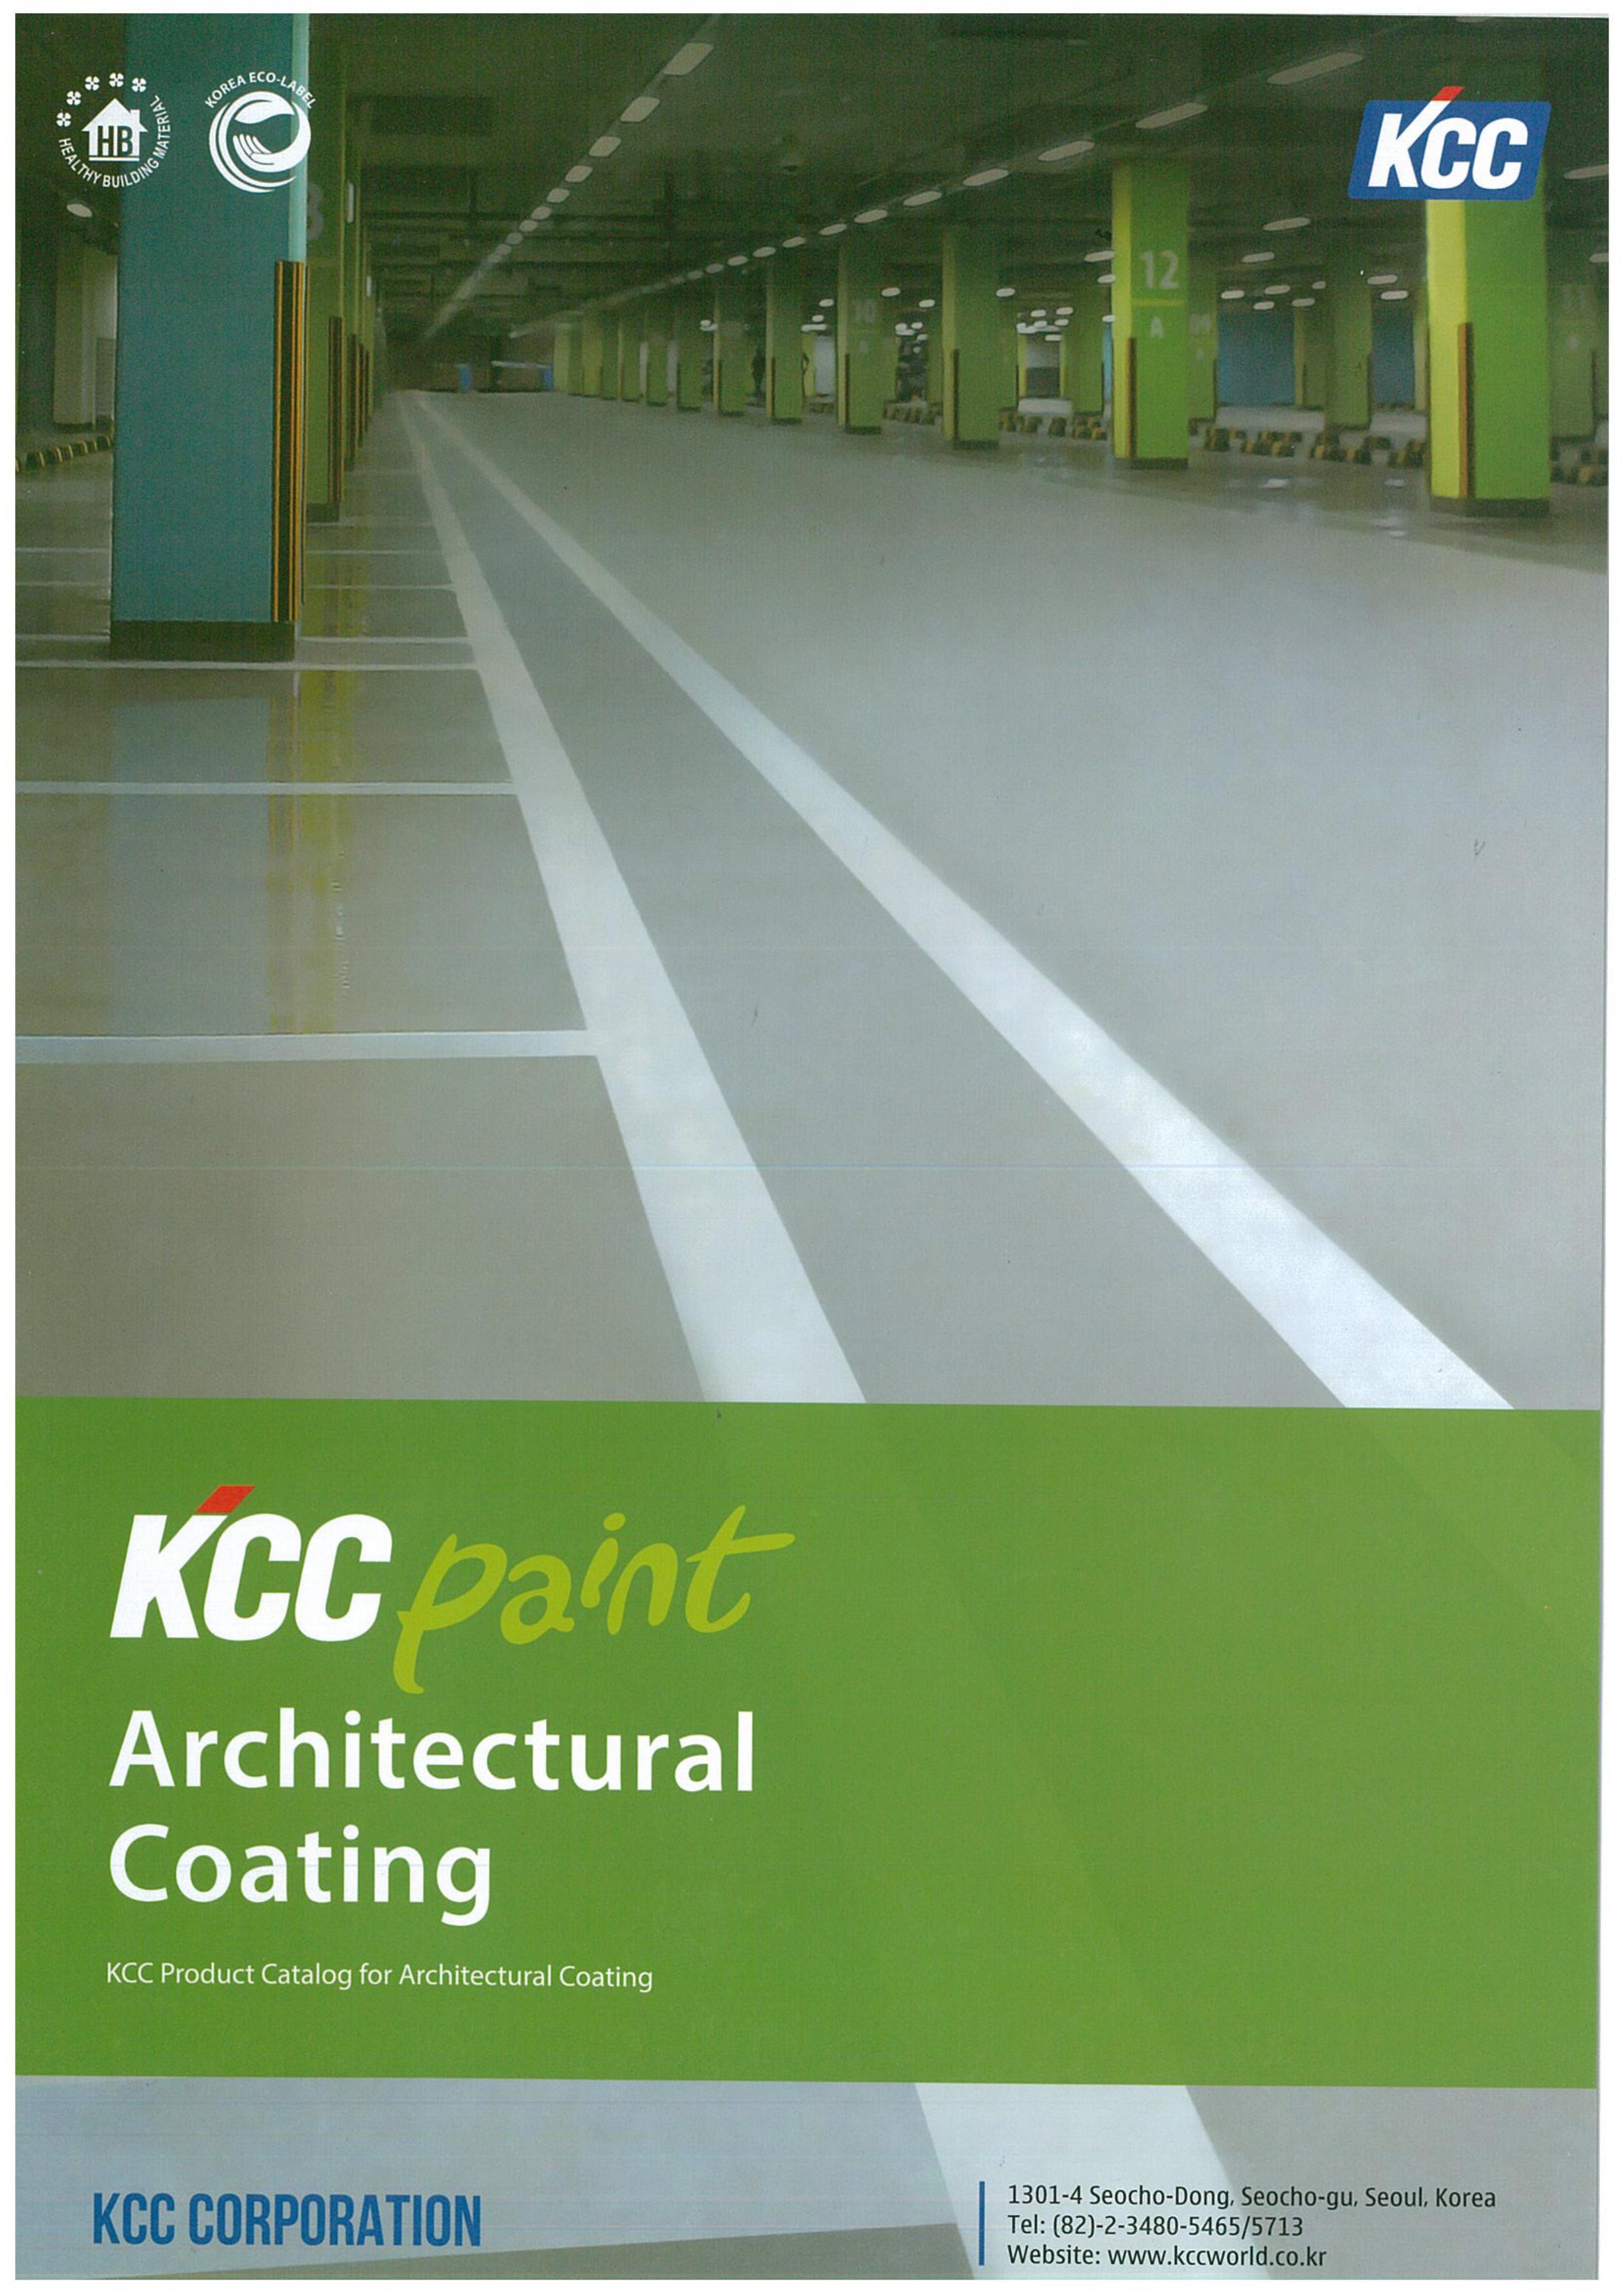 Bạn có thắc mắc tìm màu sơn phù hợp nhất cho công trình của mình? Khám phá bảng màu sơn KCC để tìm những sắc màu đáng yêu và tốt nhất cho công việc của bạn!